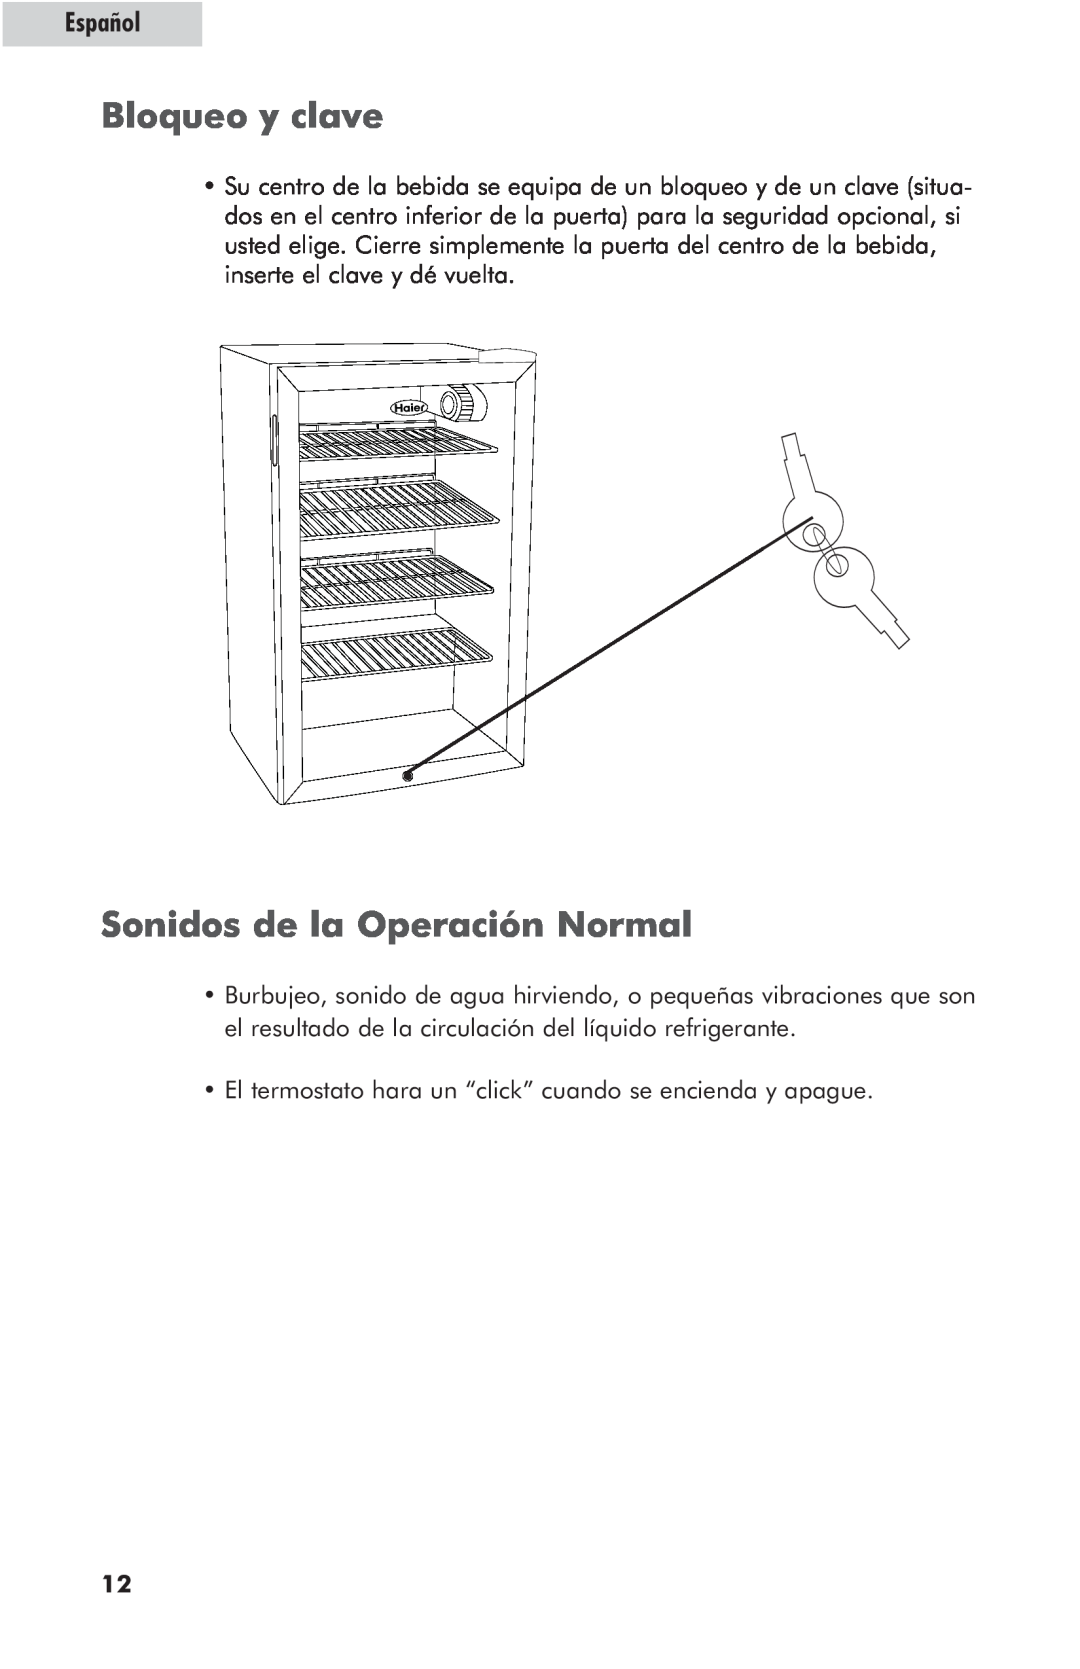 Haier hc125fvs user manual Bloqueo y clave, Sonidos de la Operación Normal, Español 